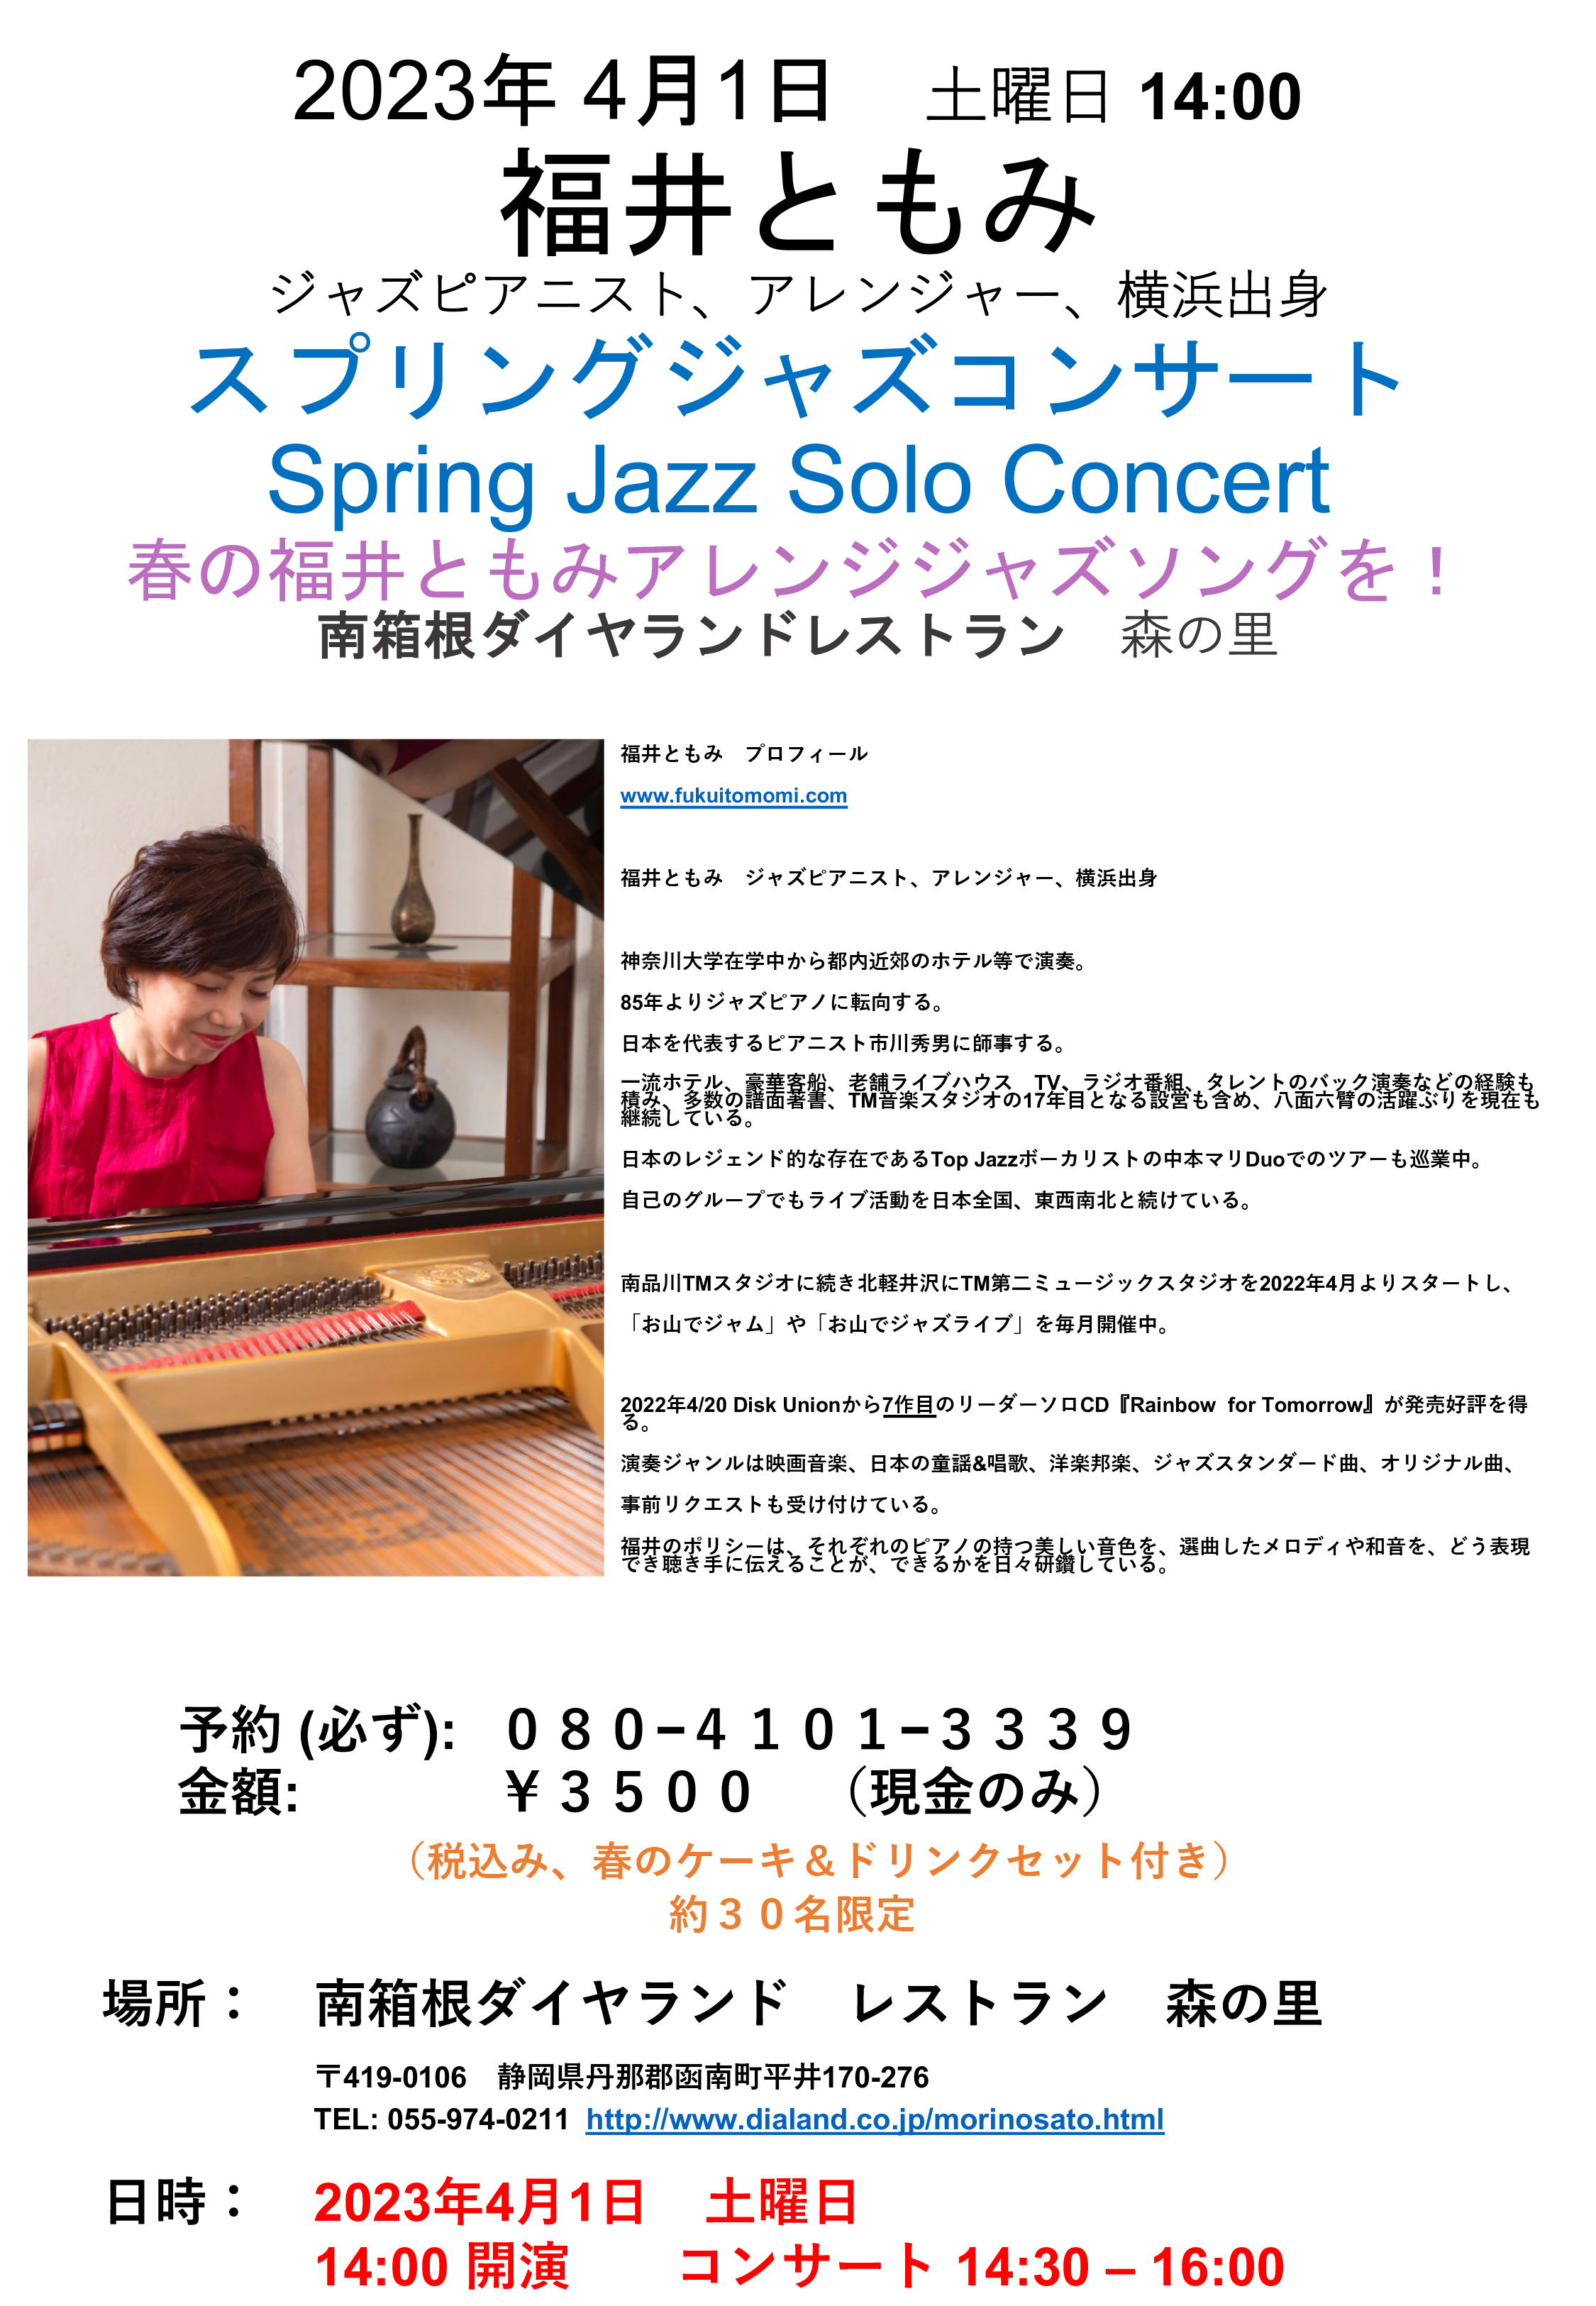 4/1(土) 春のソロピアノコンサート